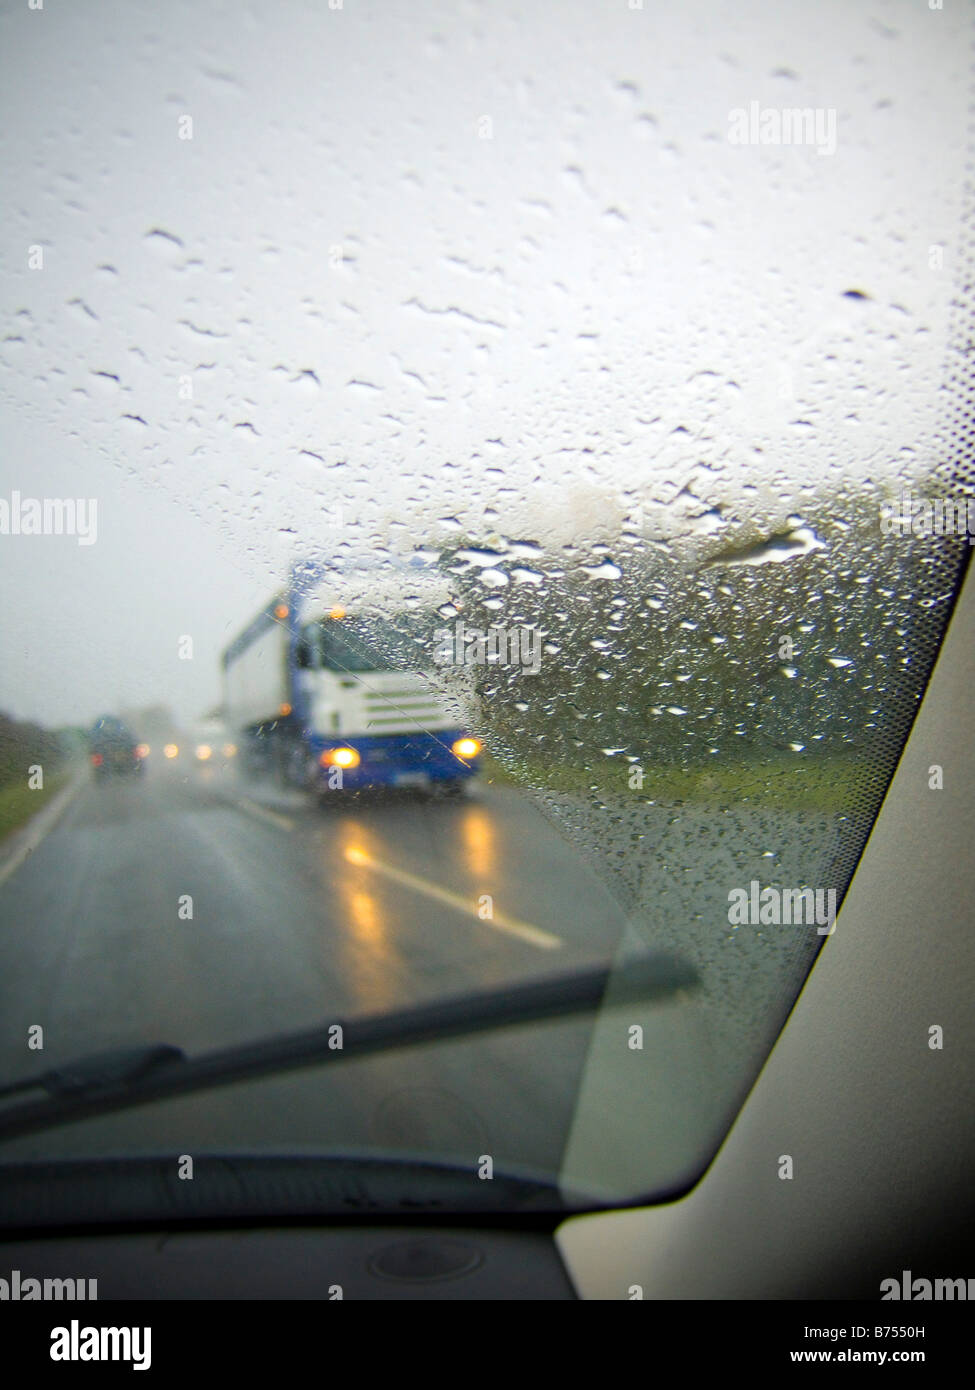 La conduite sur l'autoroute par temps de pluie, les véhicules oncomming Banque D'Images